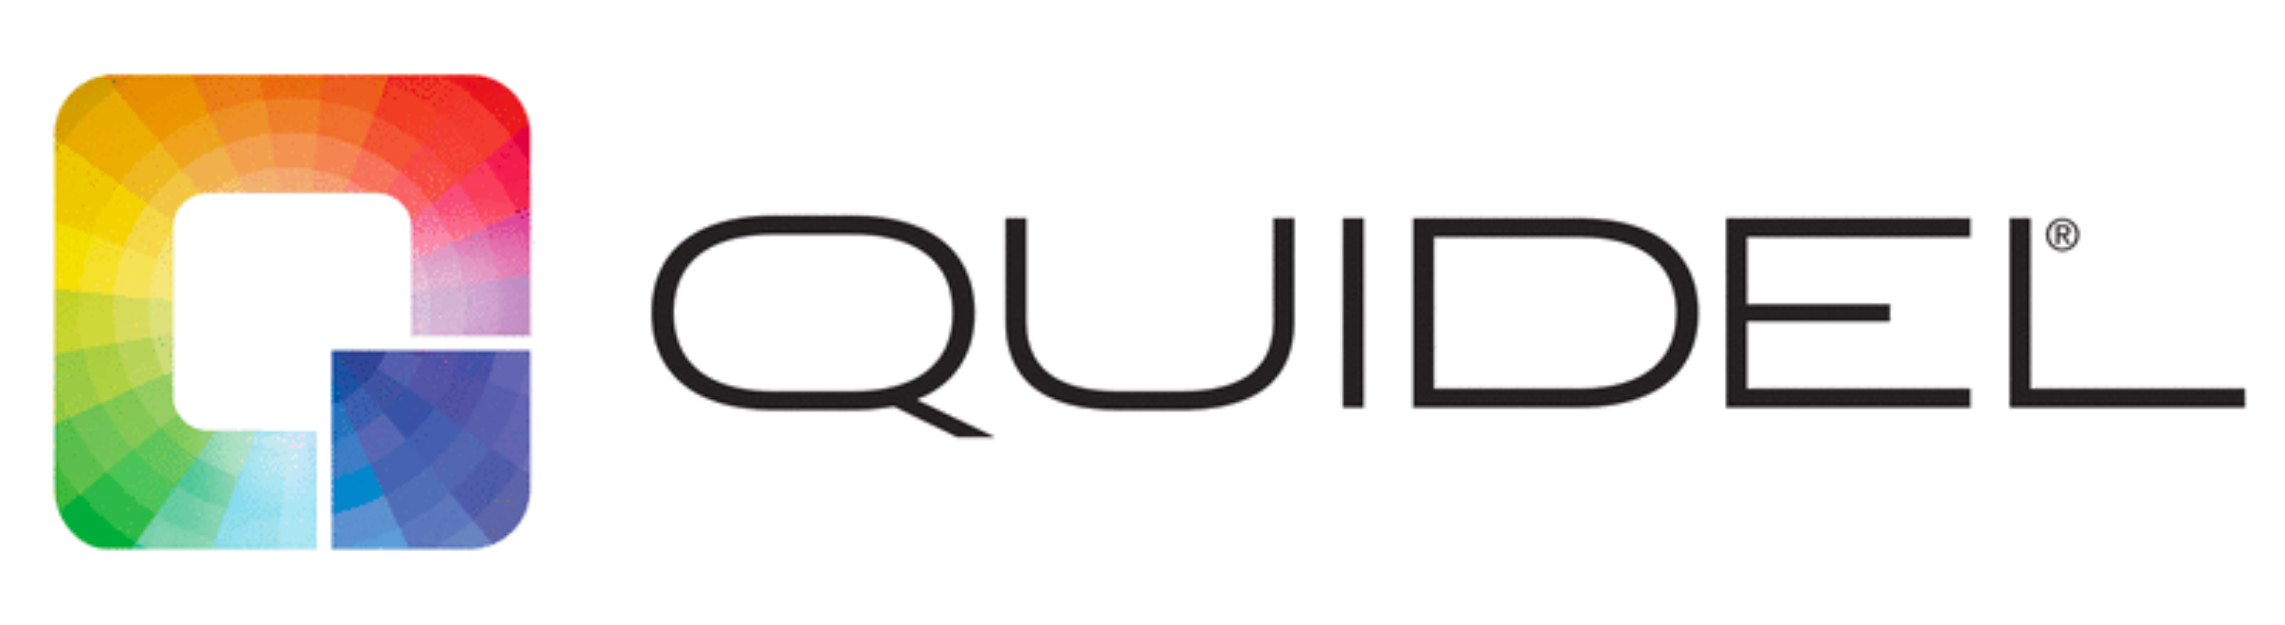 Quidel logo